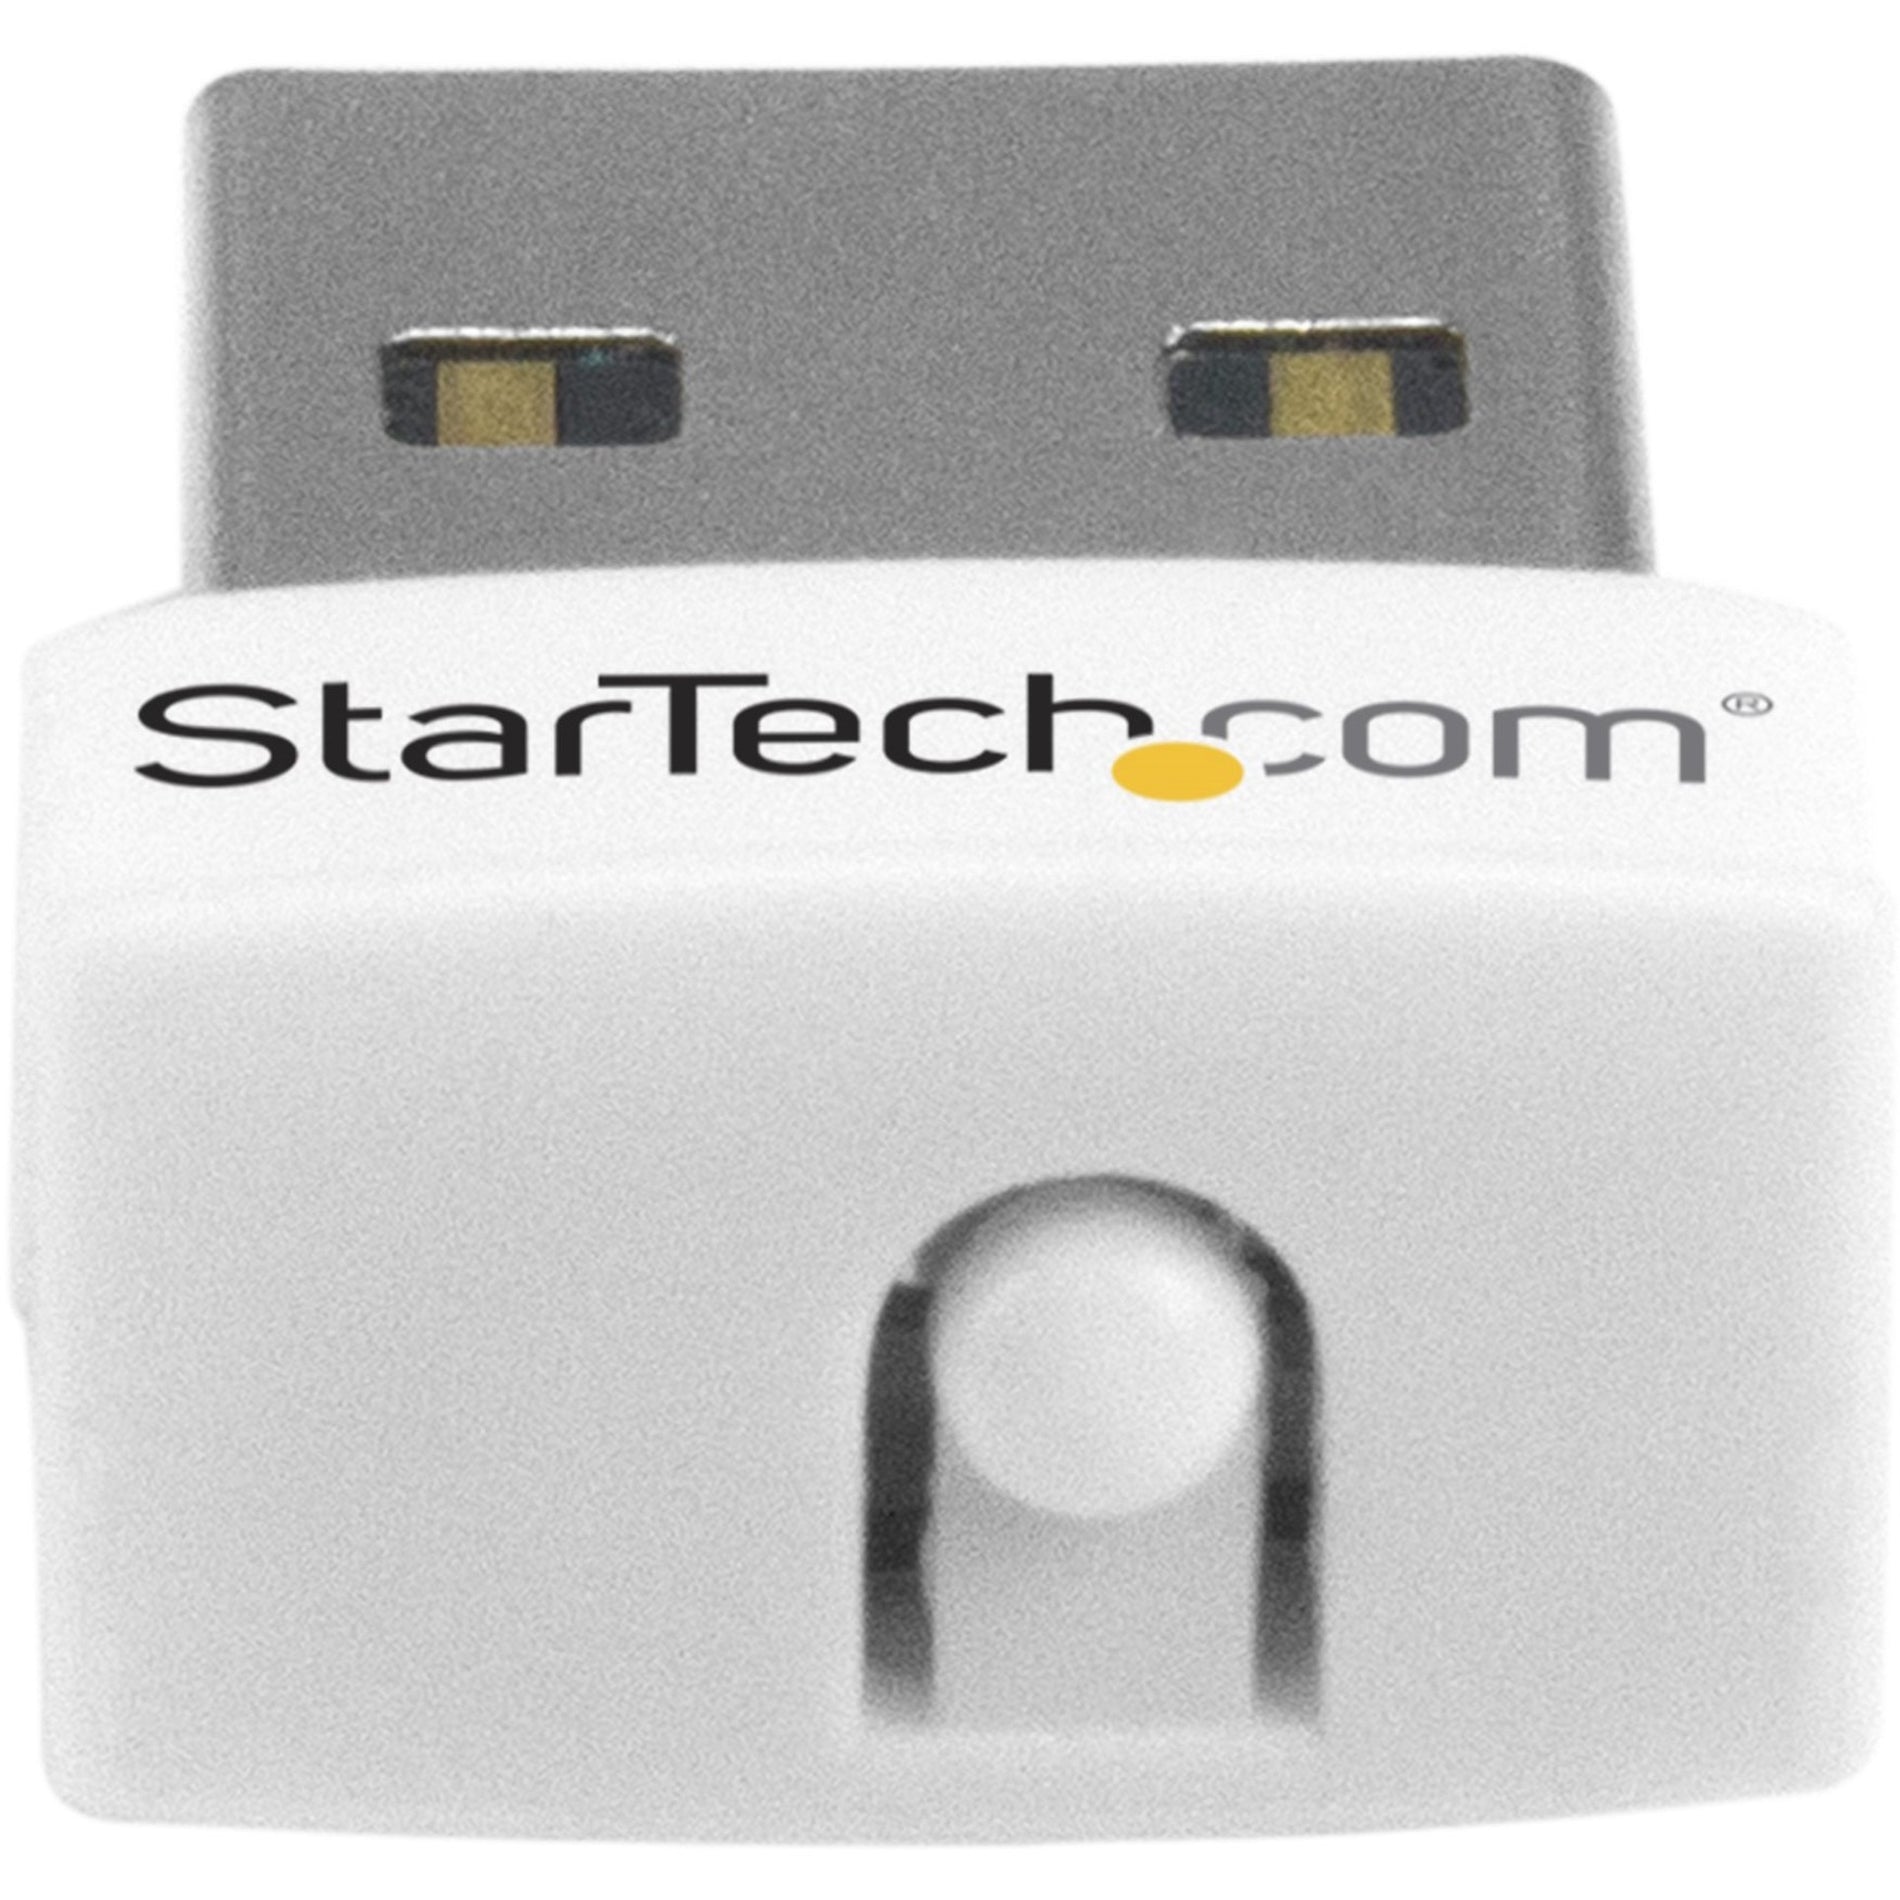 StarTech.com USB150WN1X1W USB Wireless Adapter, 150Mbps Mini WiFi Adapter - White